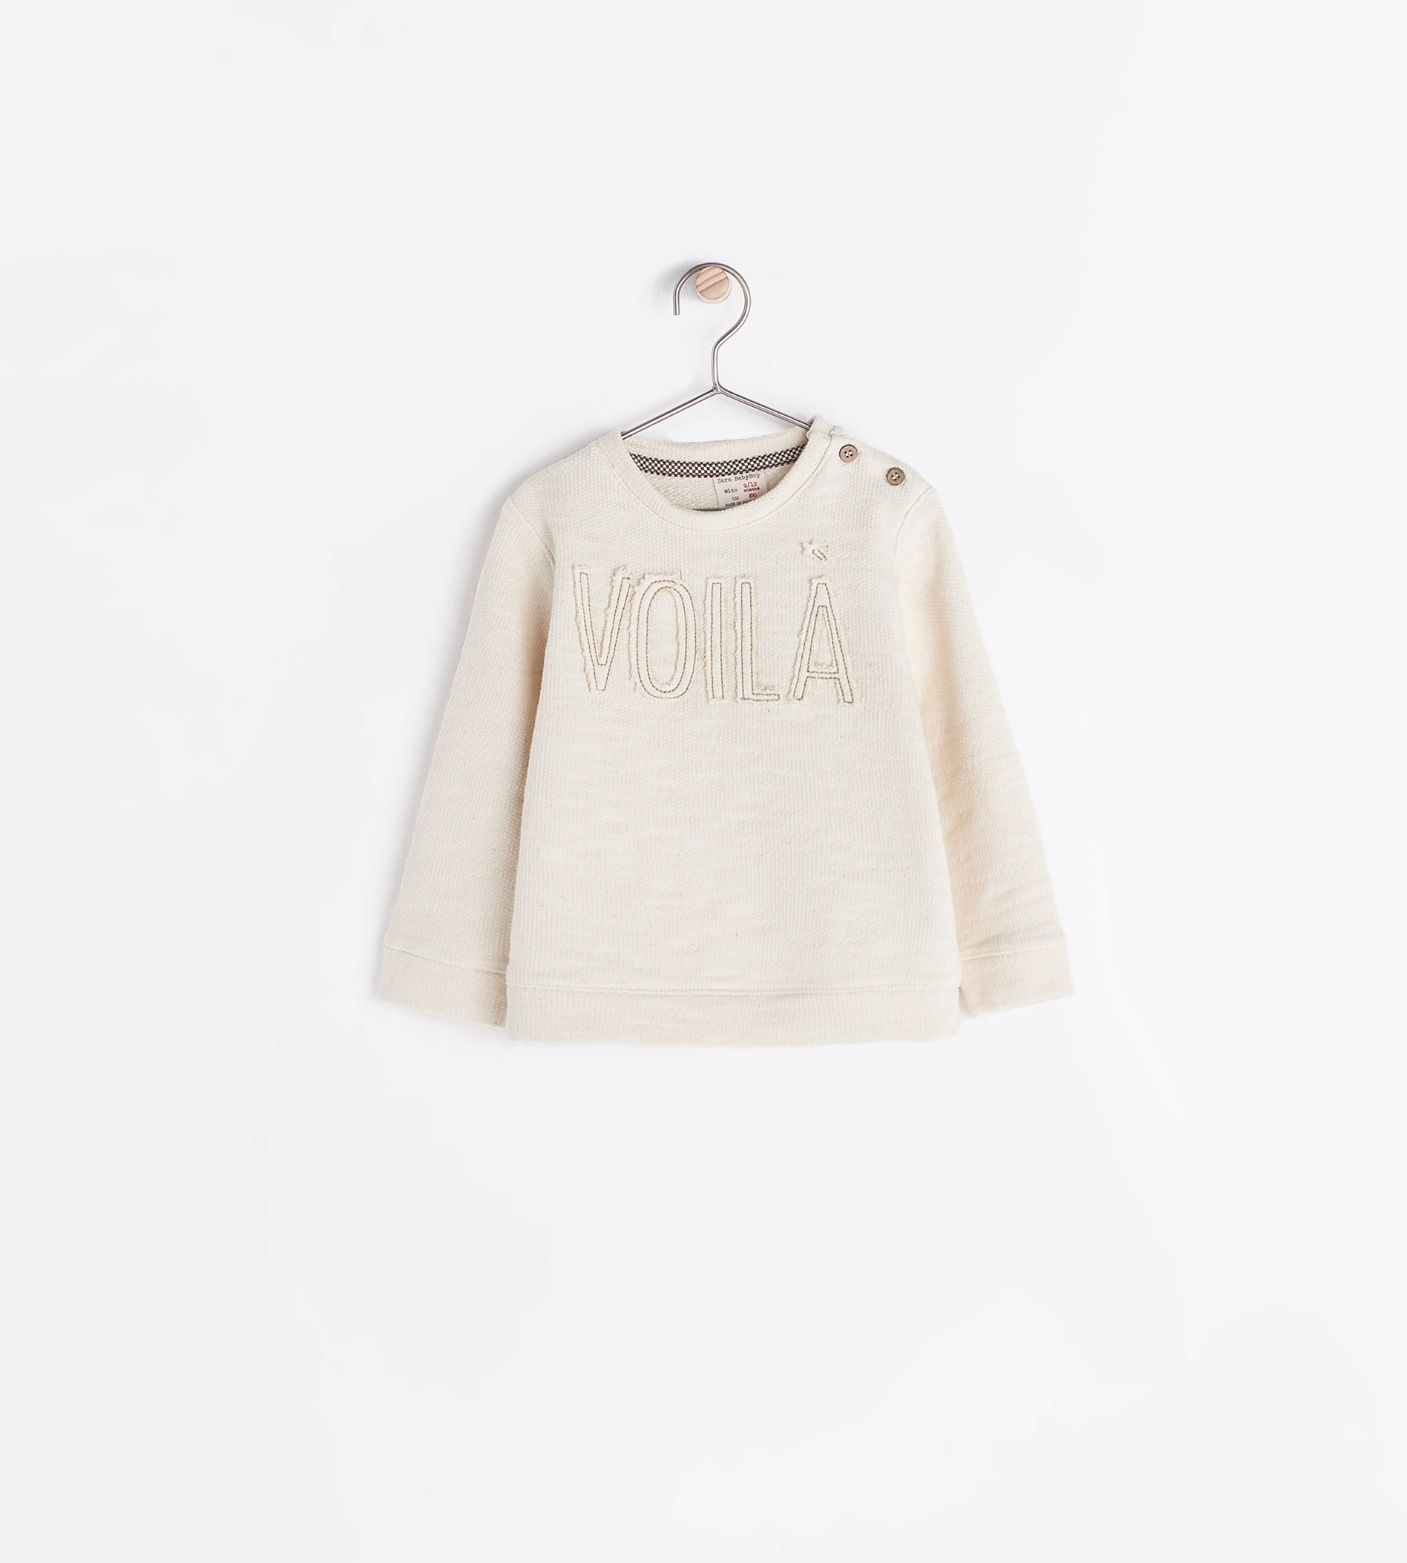 Zara Embroidered "voila" sweatshirt